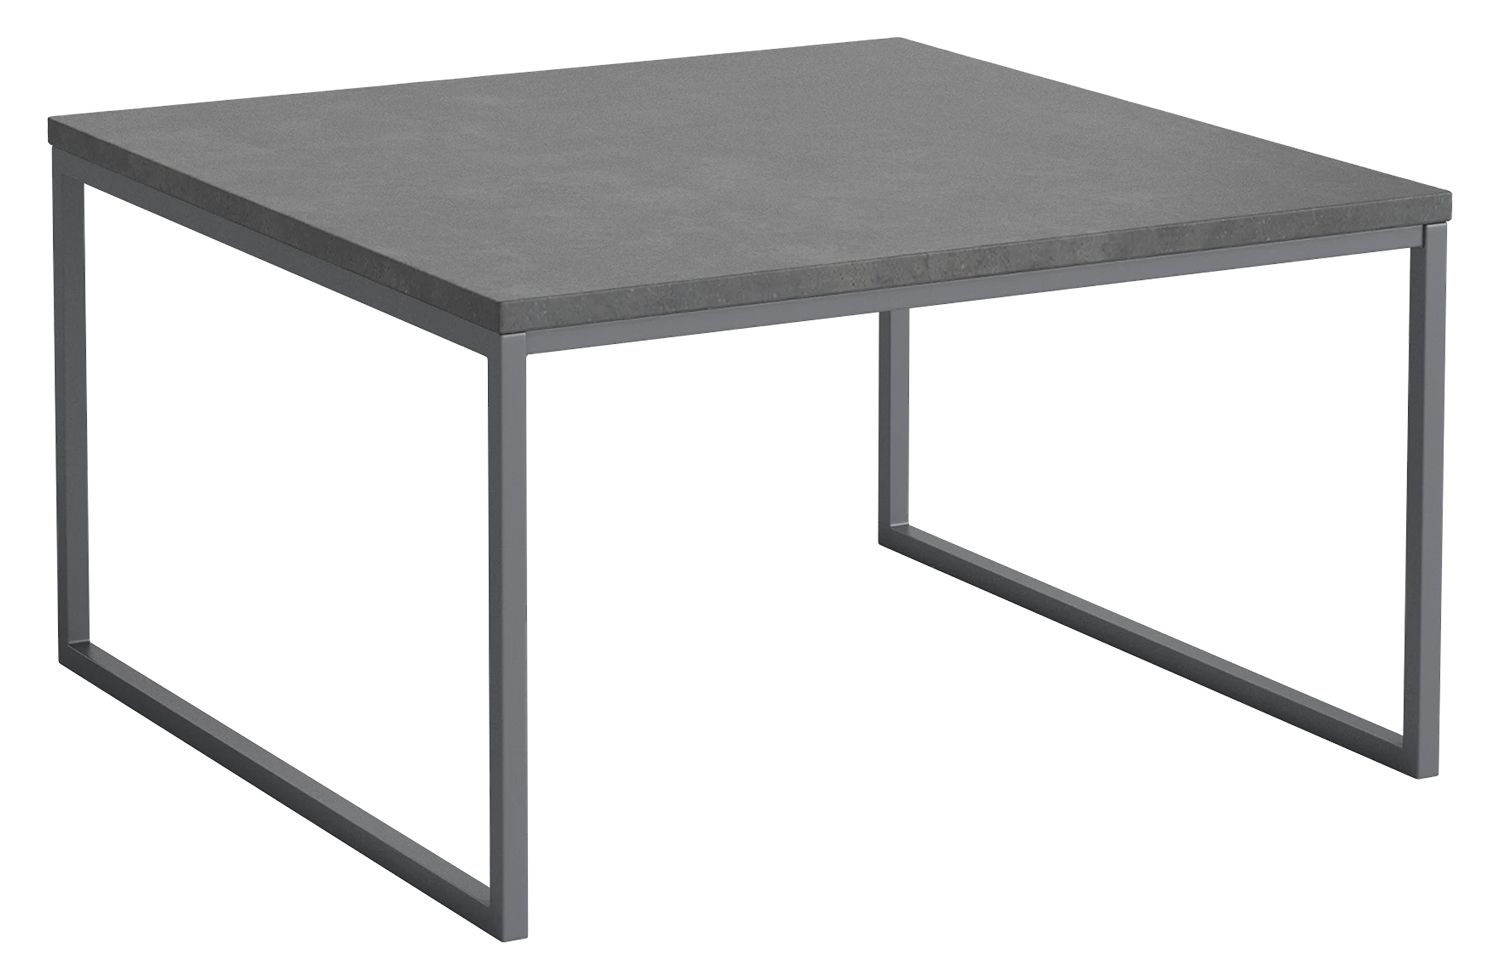 Bolia designové zahradní stoly Como Outdoor Coffee Table (výška 32 cm) - DESIGNPROPAGANDA